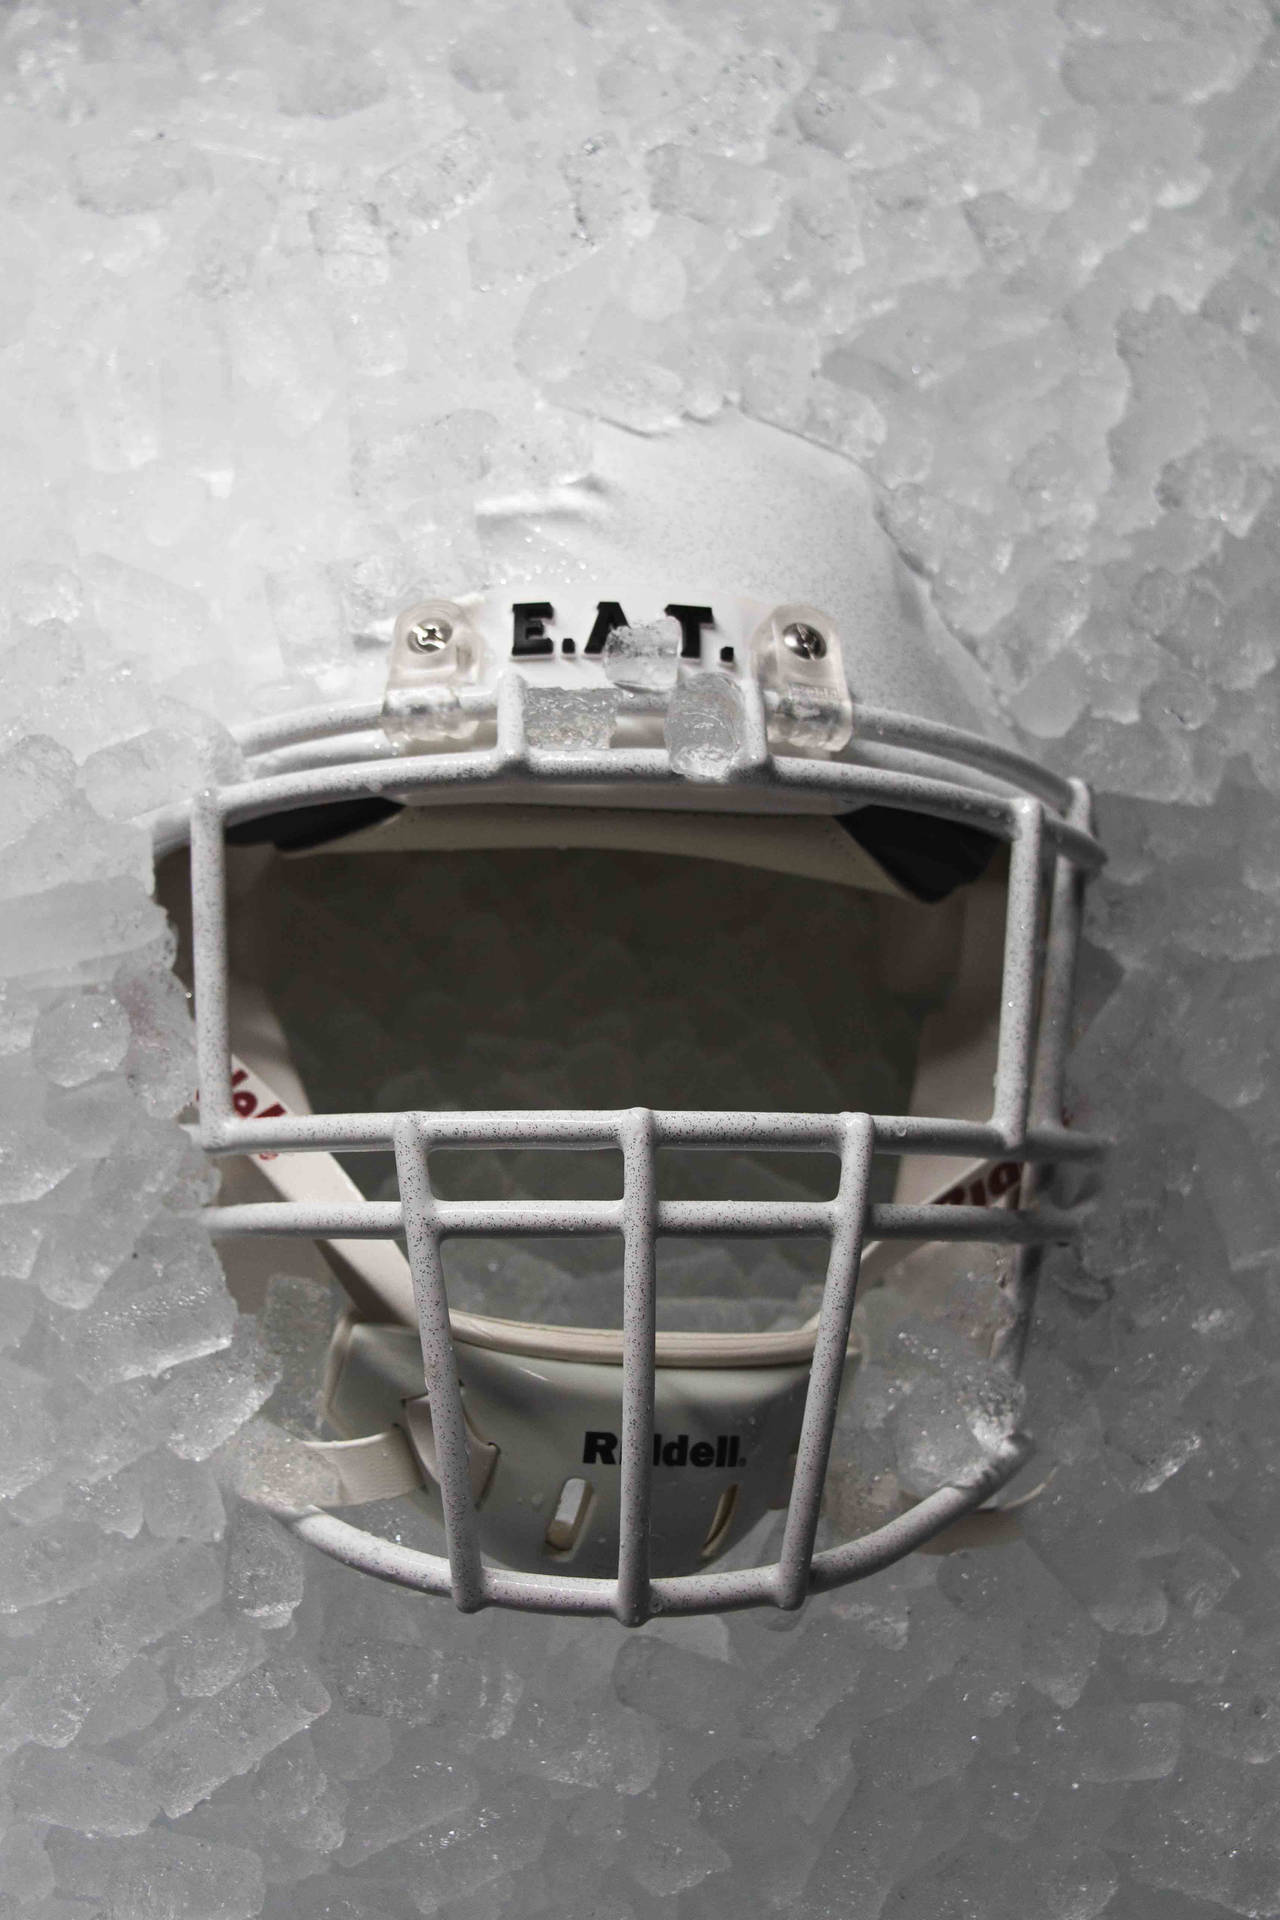 American Football Helmet On Ice Background